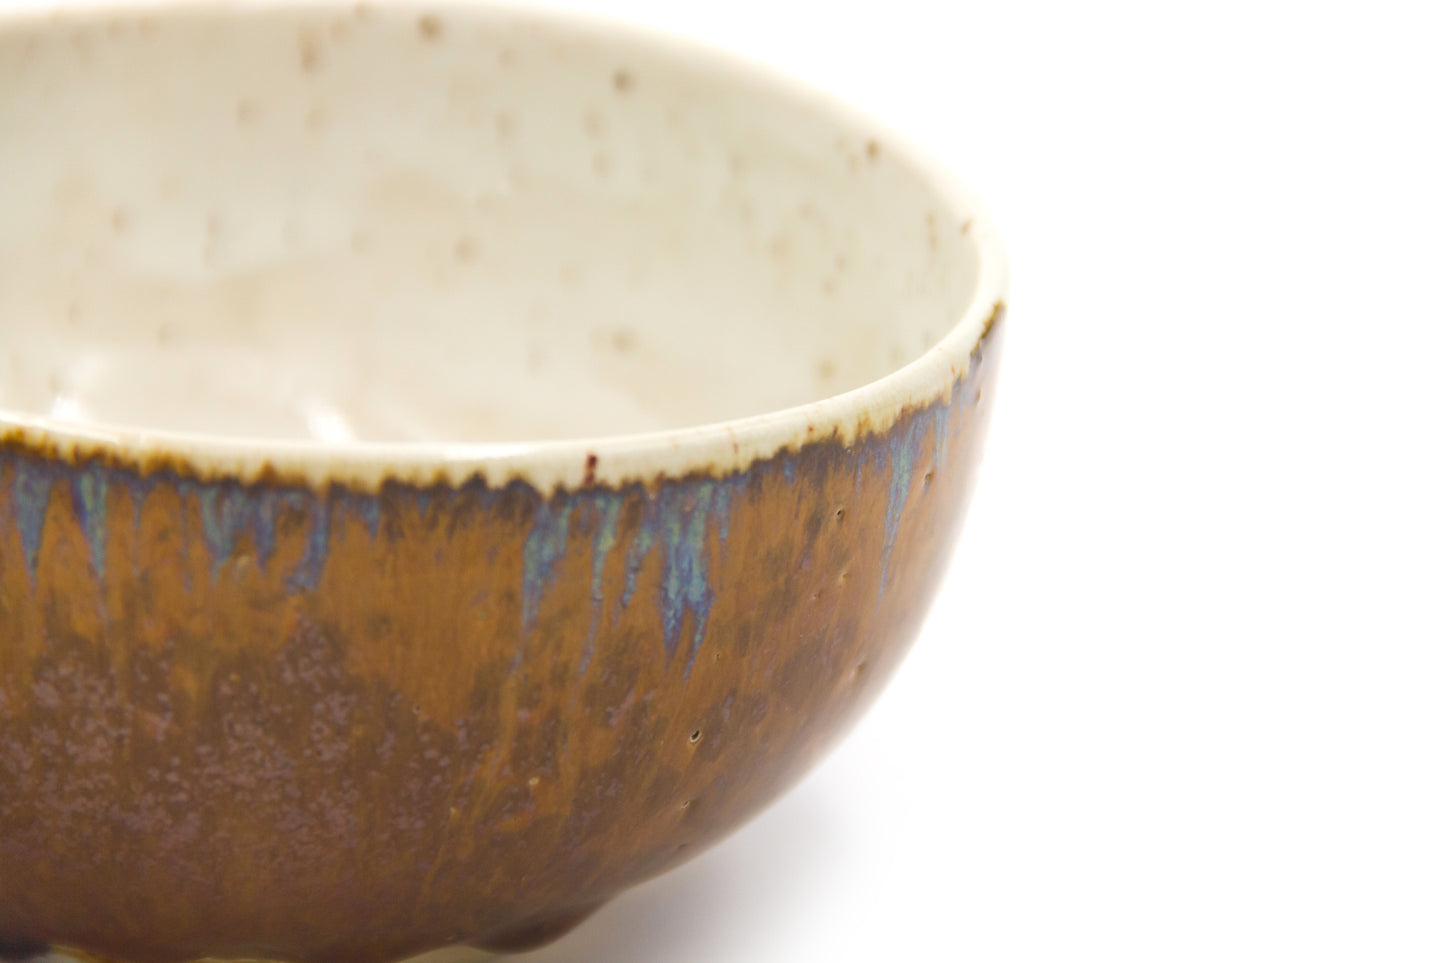 Miska ceramiczna w kolorze brązowo-beżowym